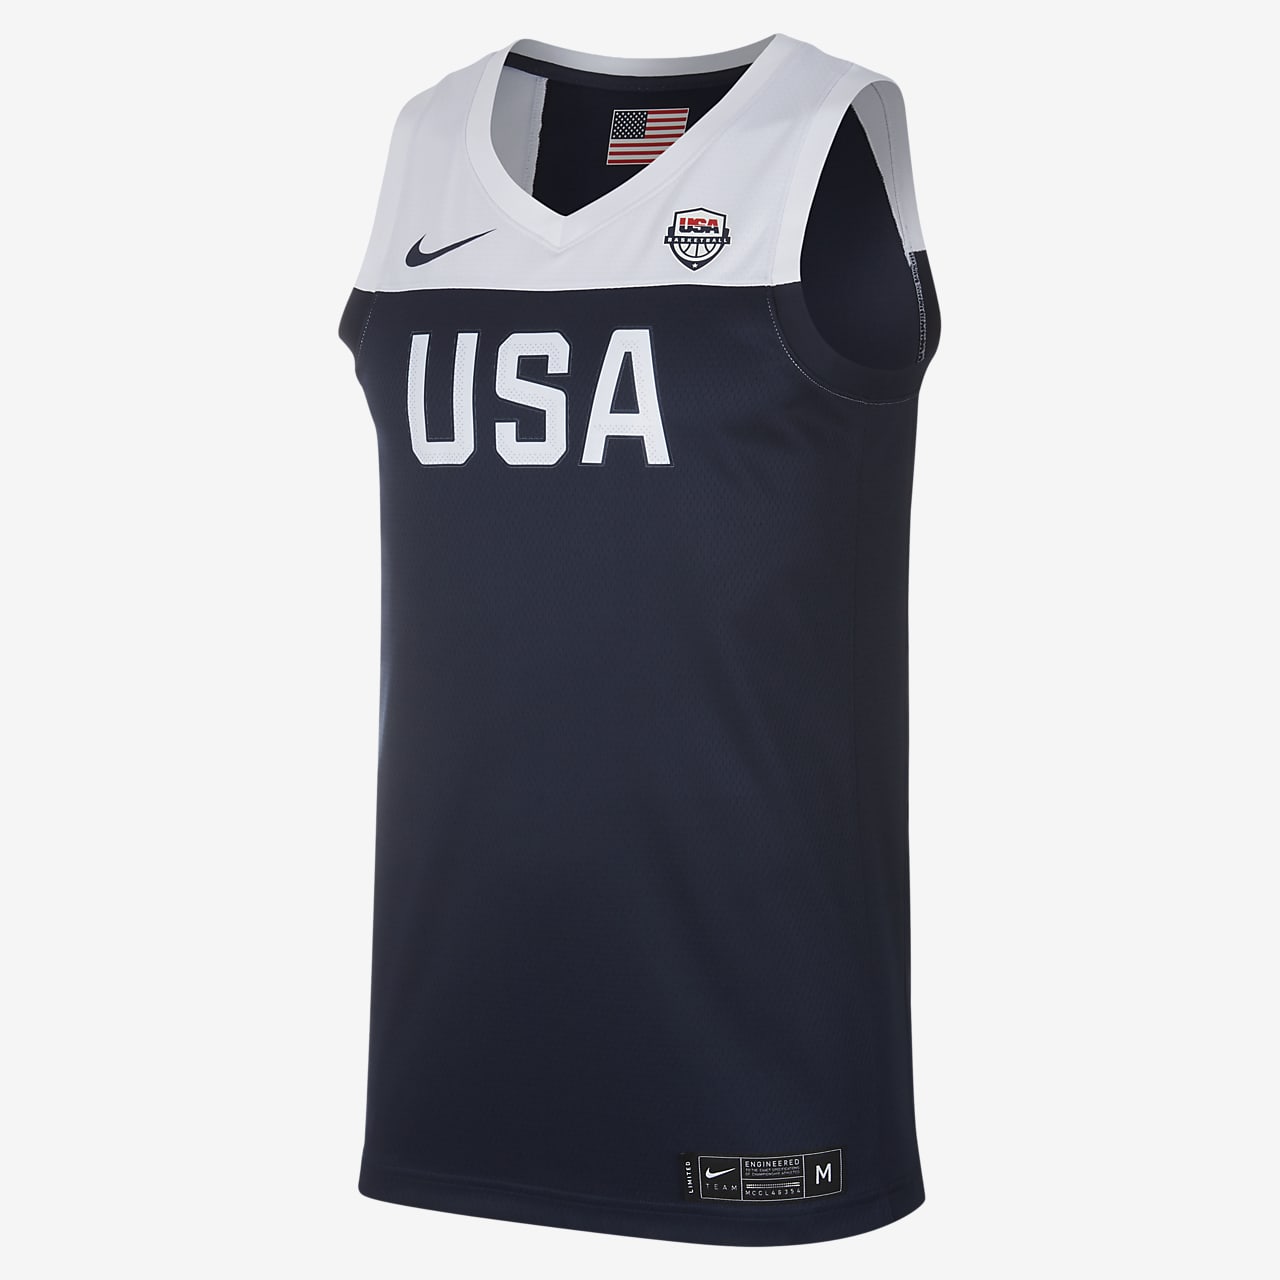 USA Nike (Road) Herren-Basketballtrikot